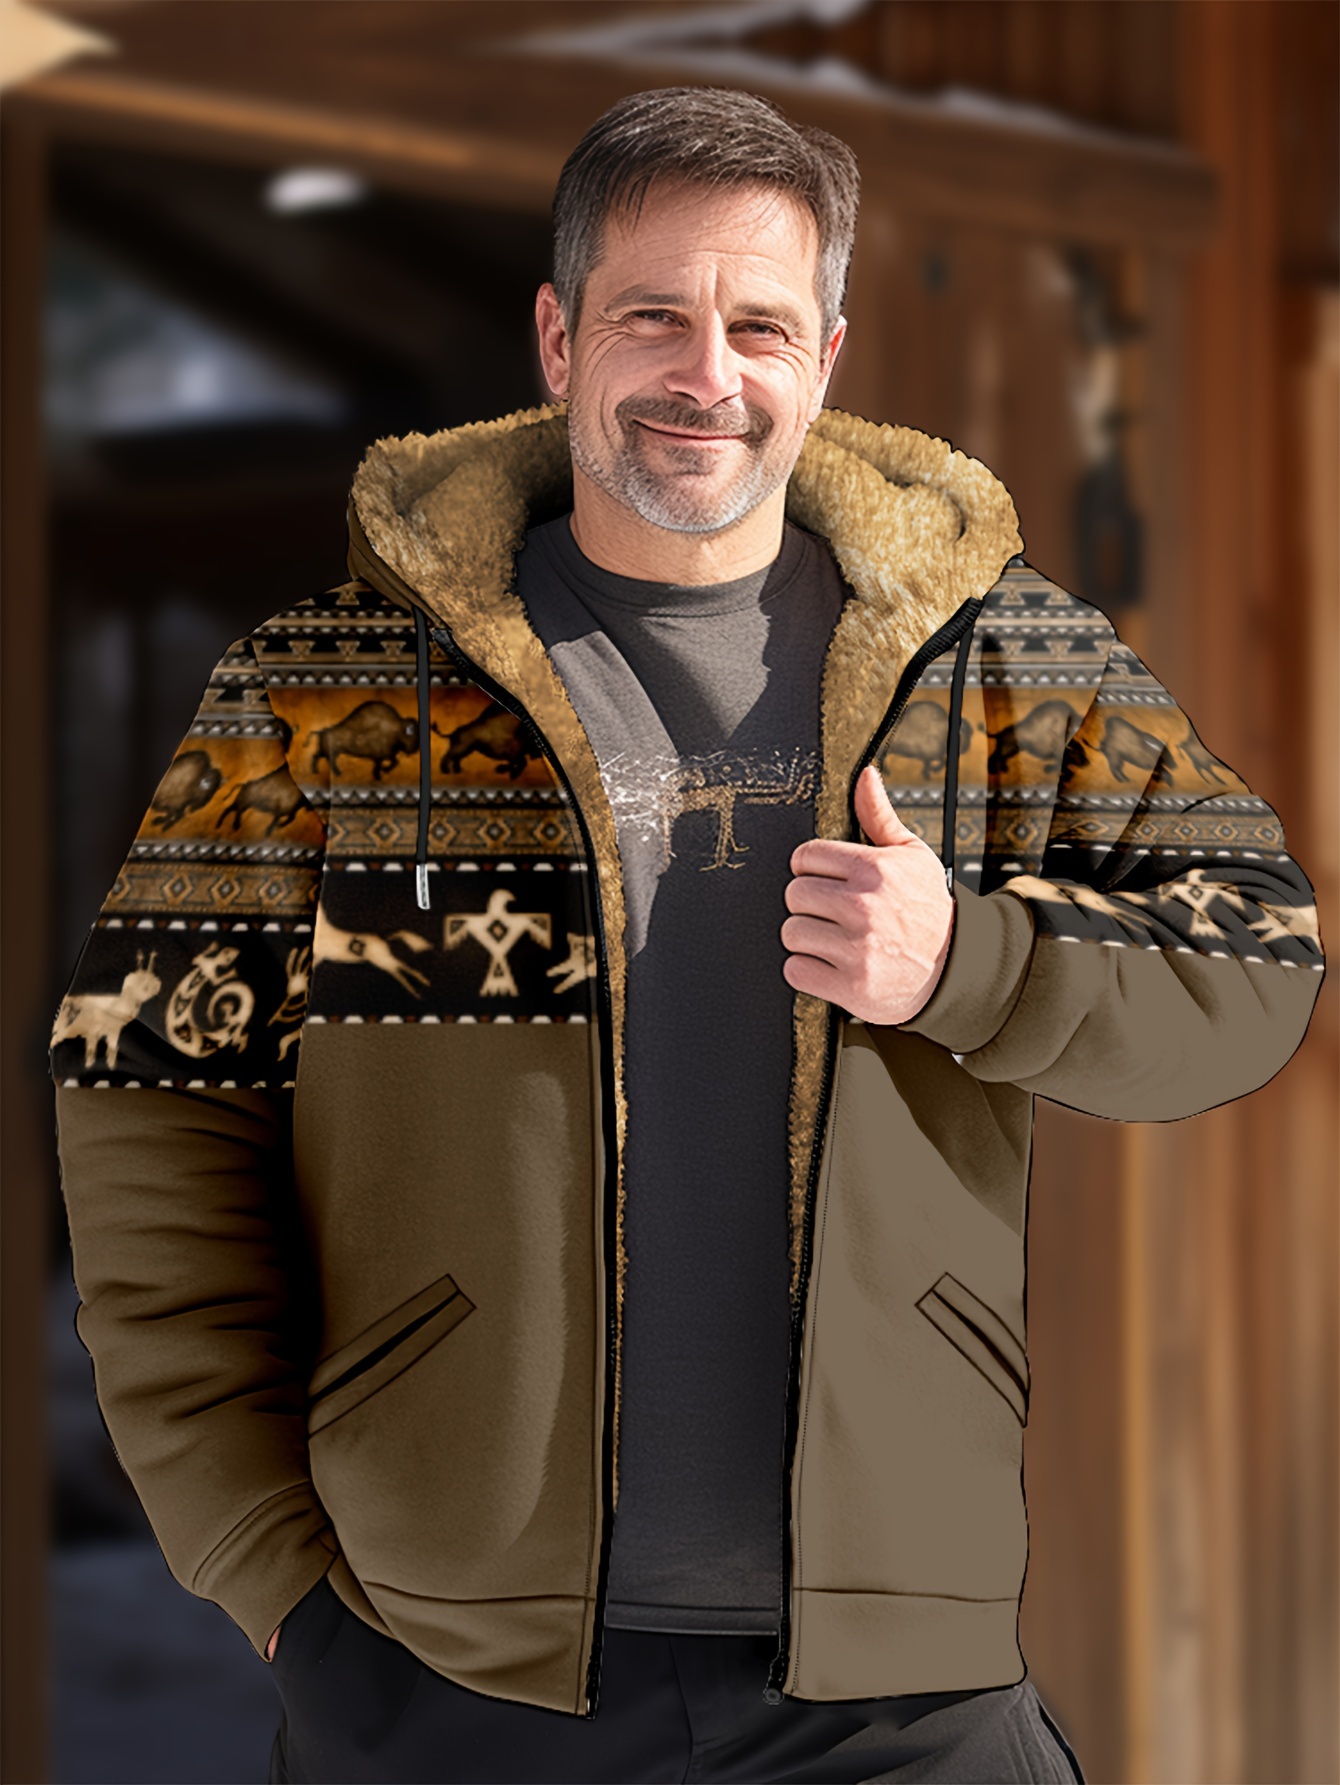 Men's Printed Fleece Jacket